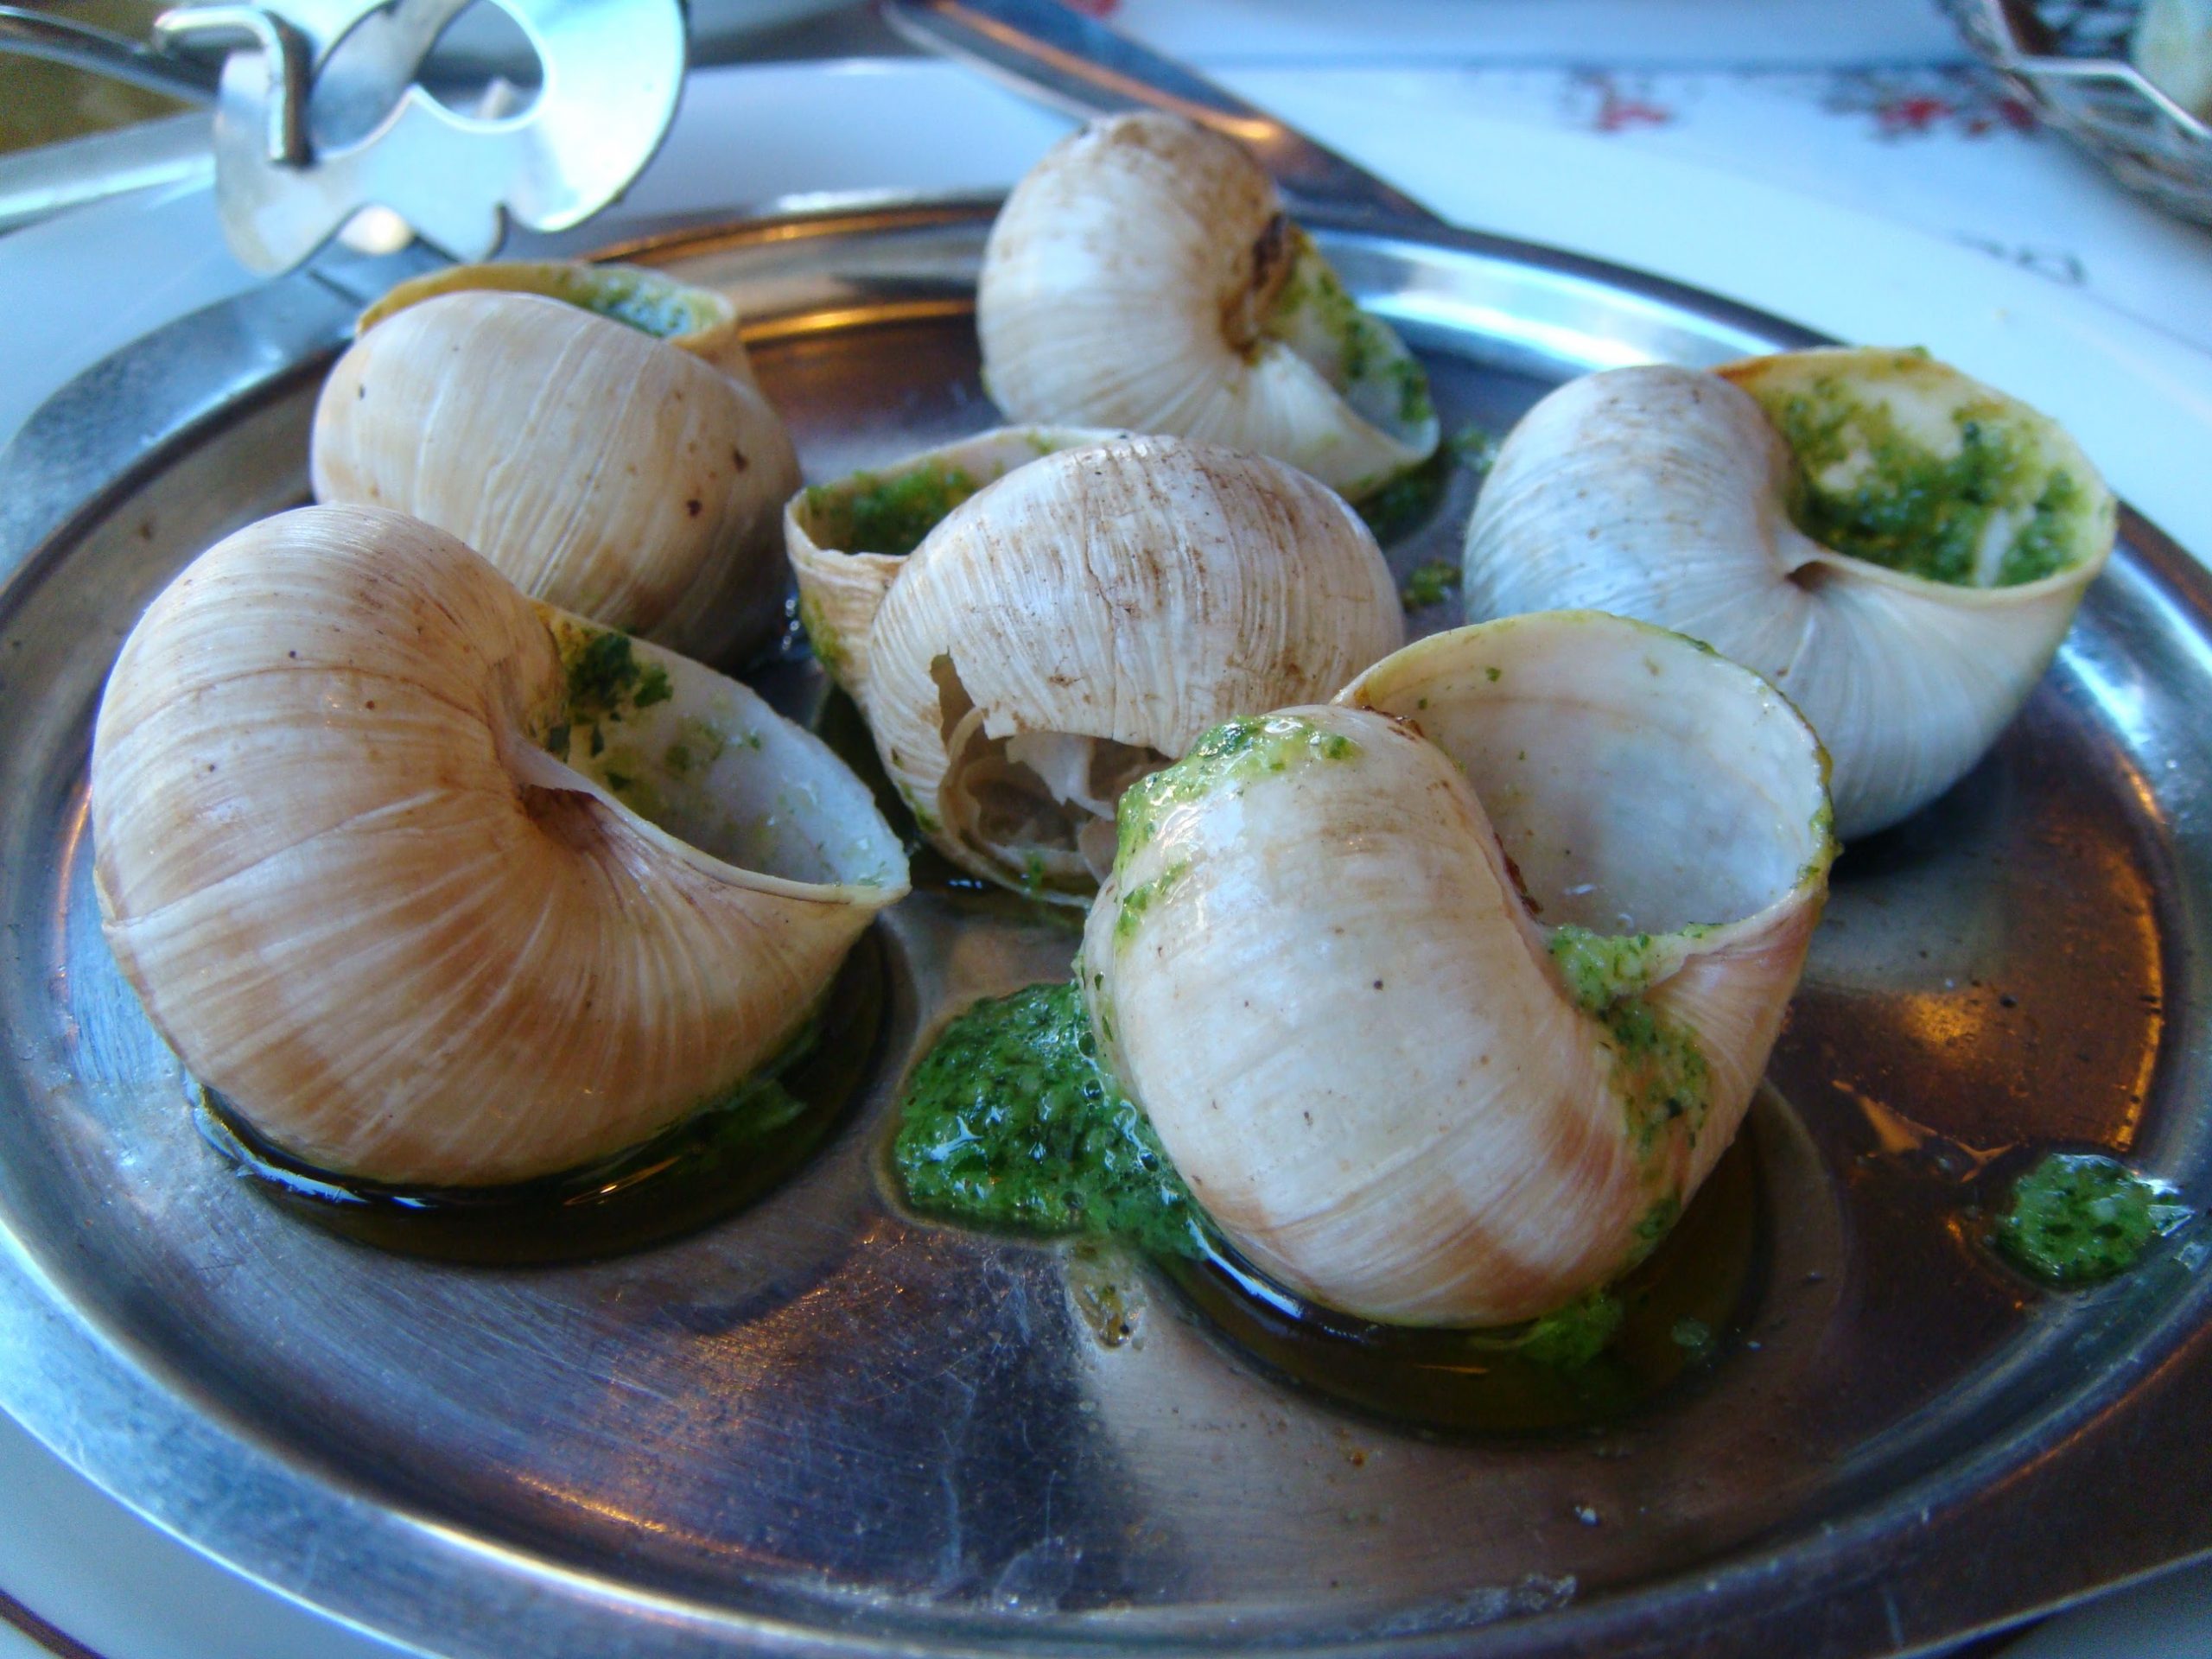 Food in Paris - escargot